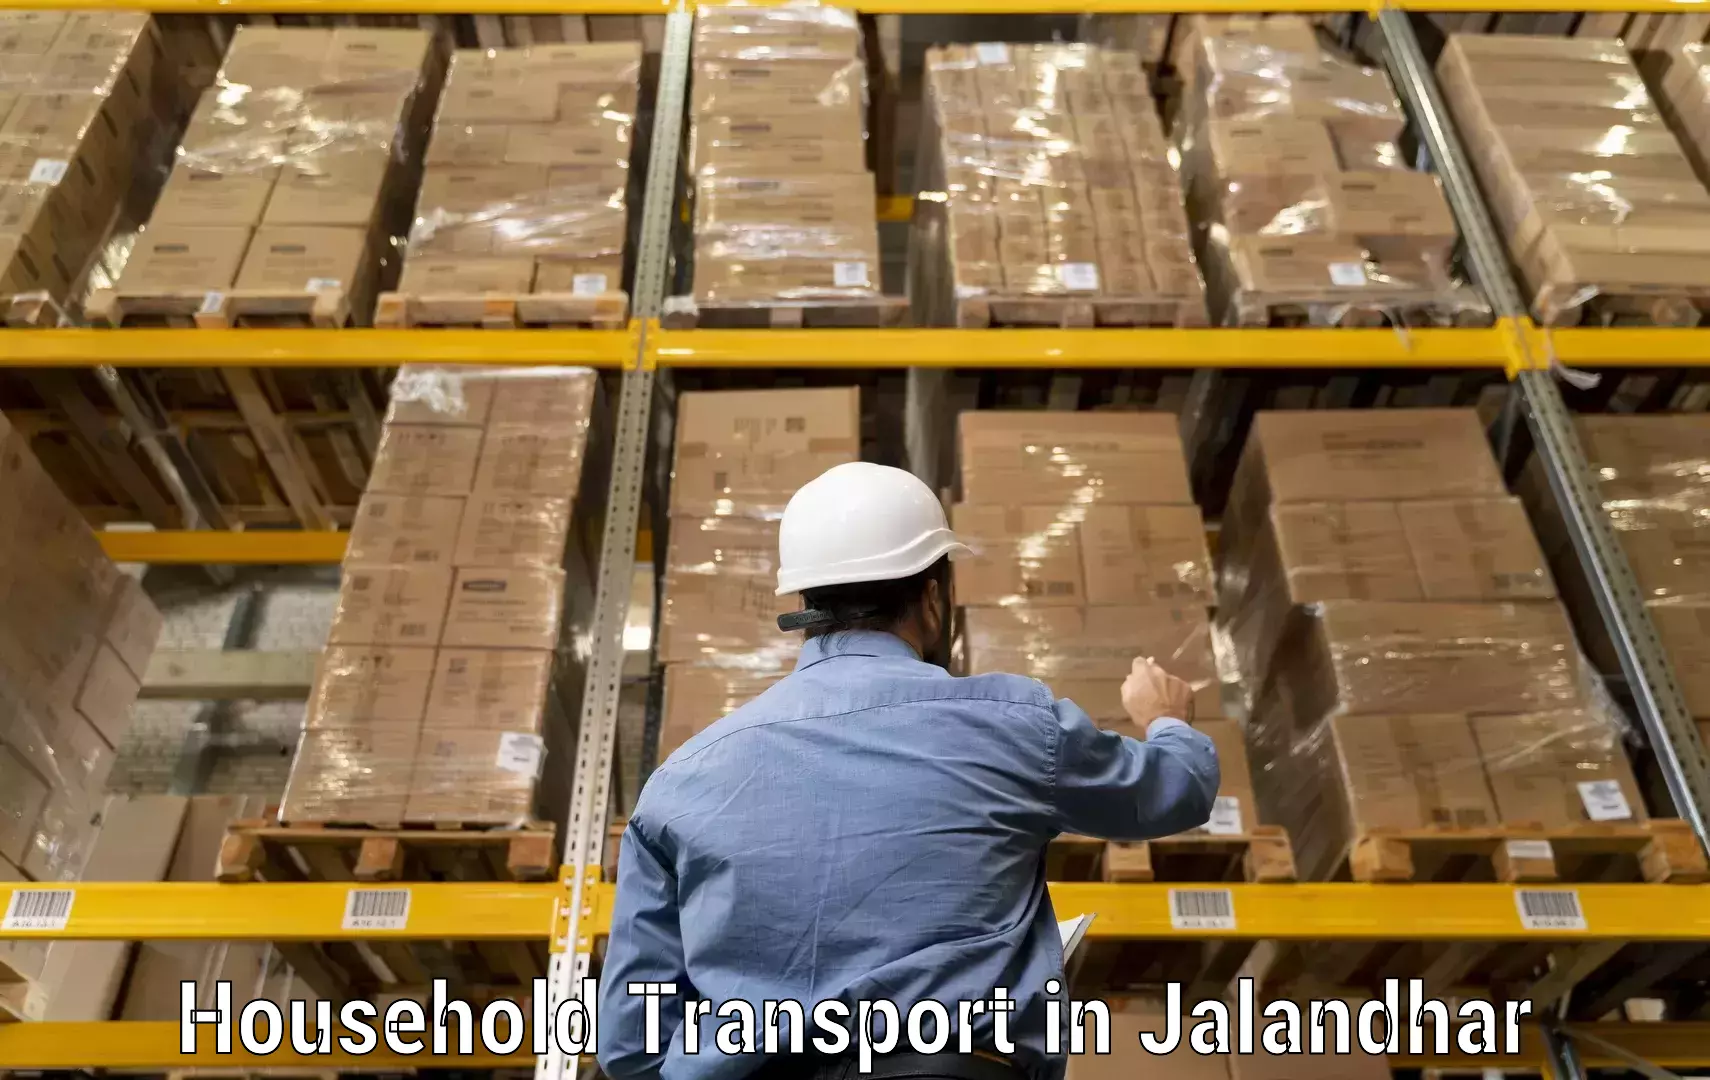 Skilled household transport in Jalandhar